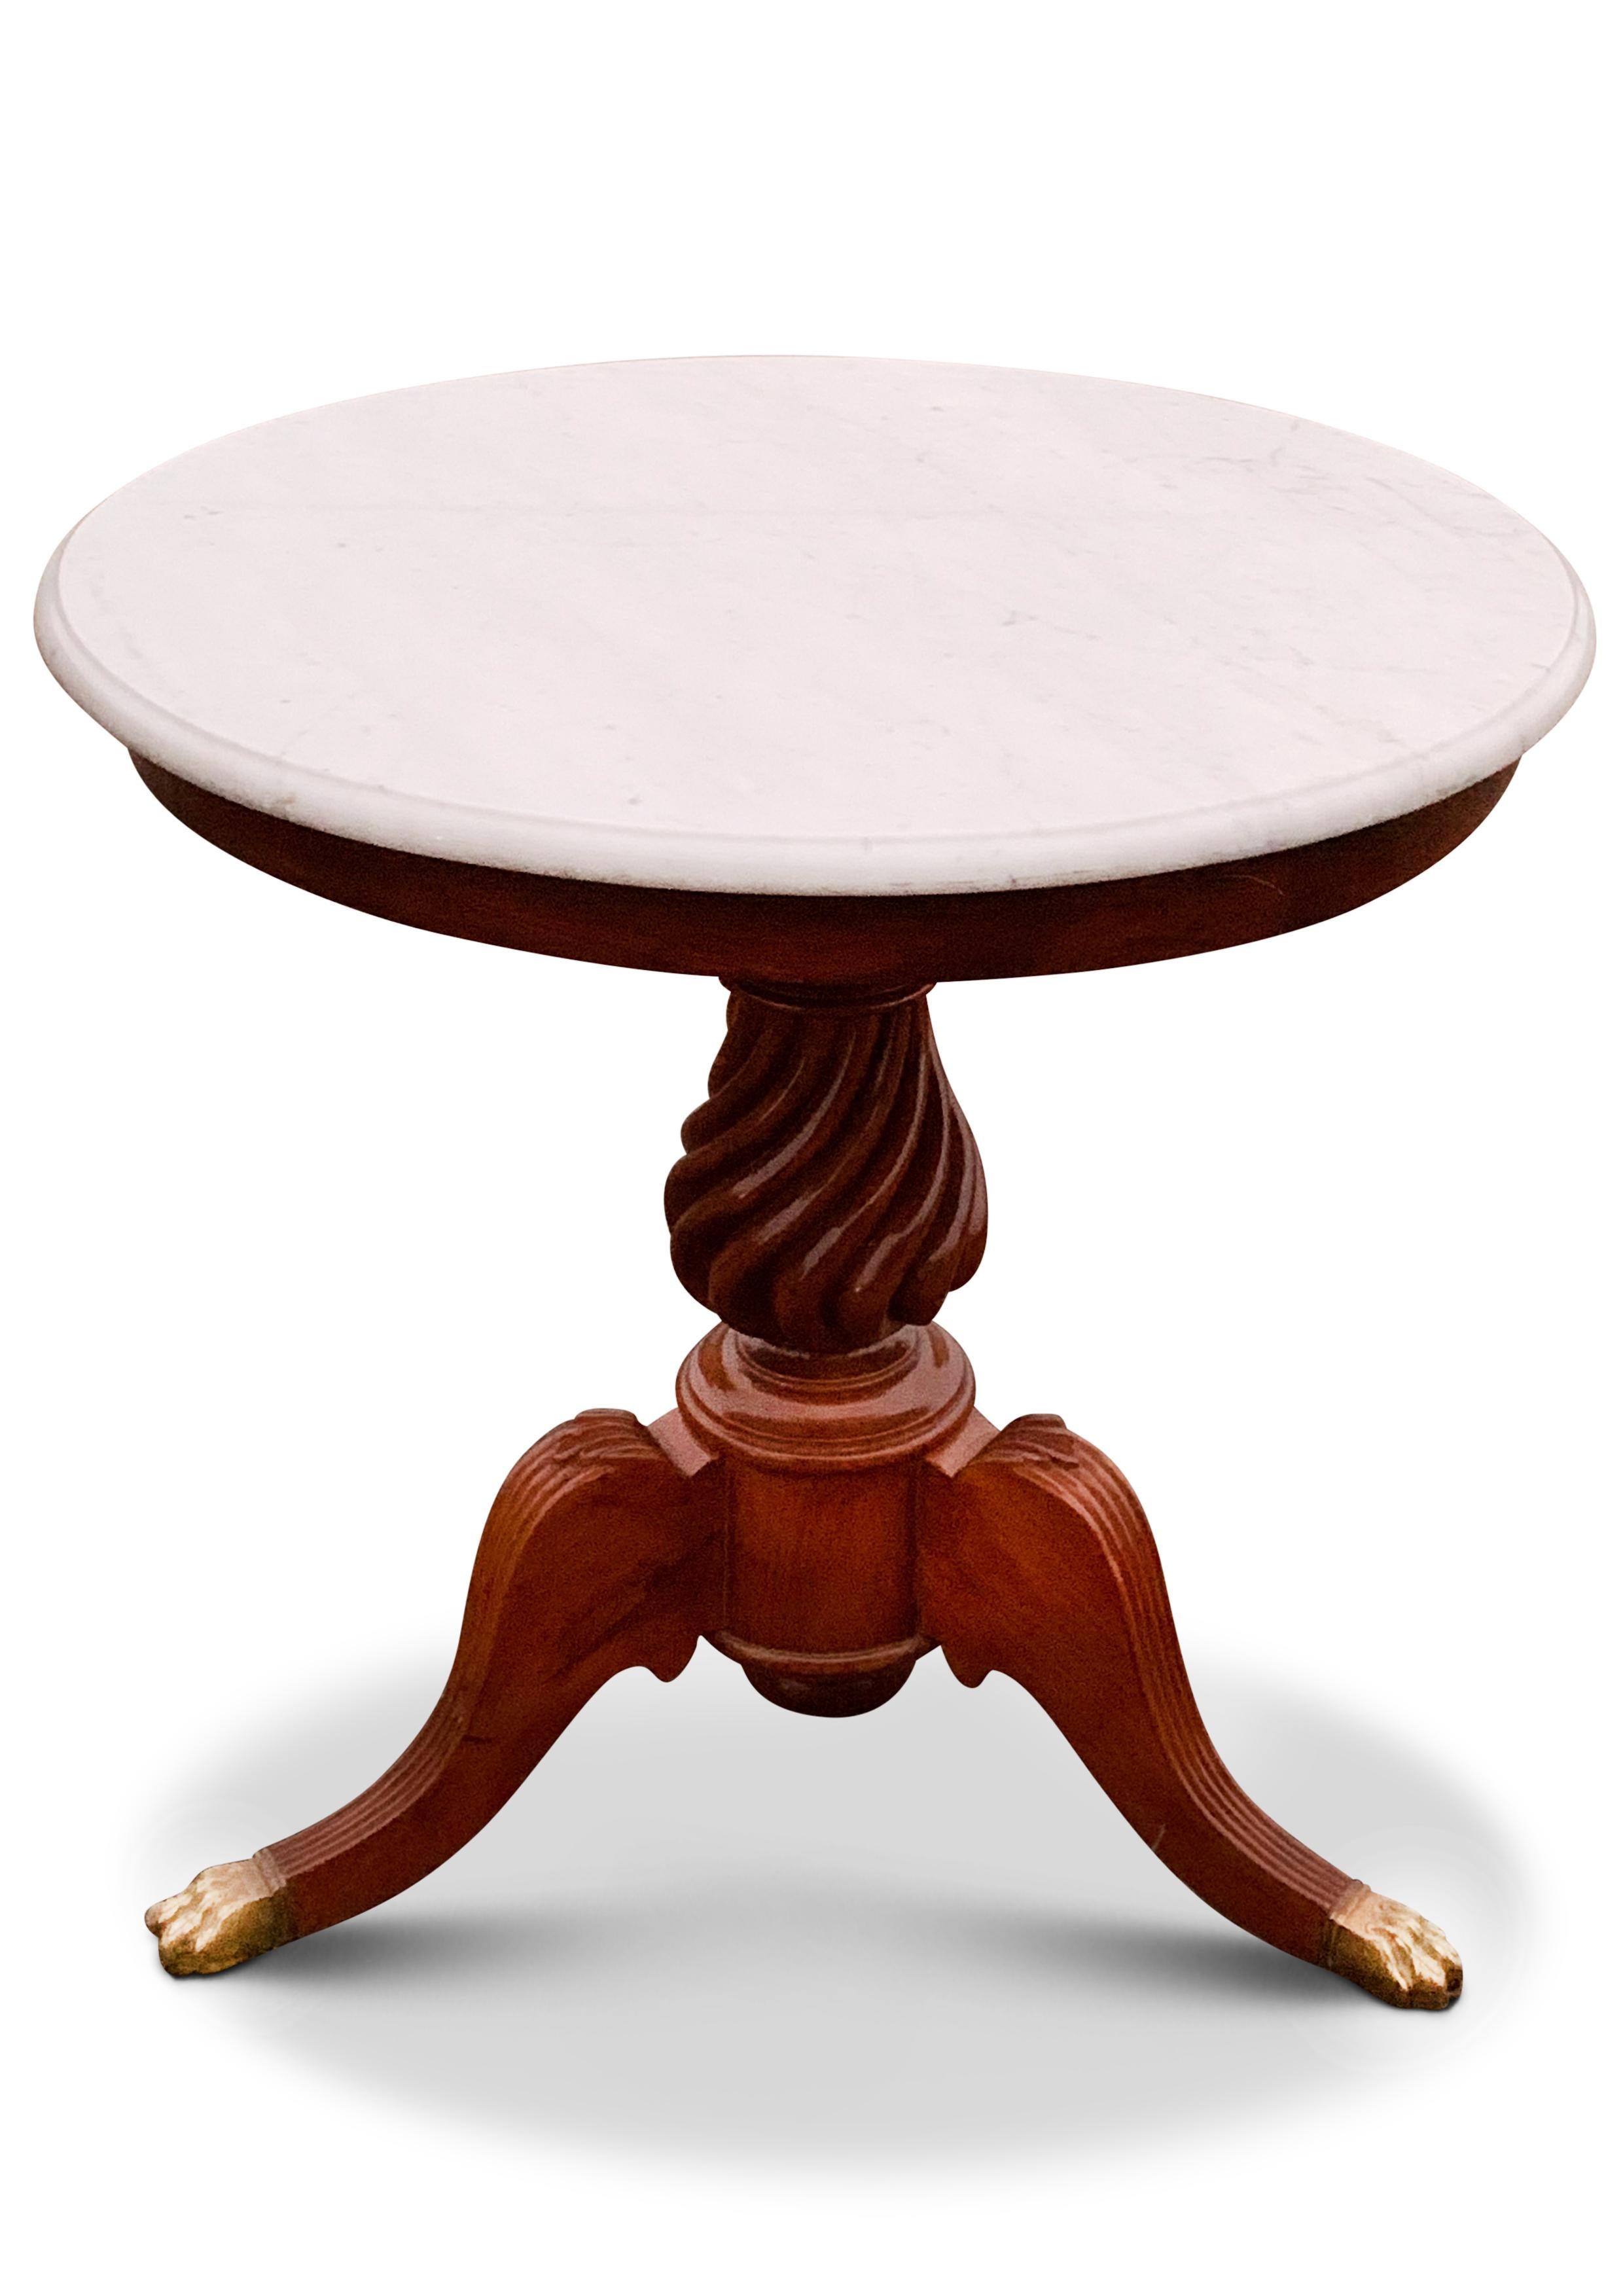 19. Jahrhundert Marmor & Mahagoni Gueridon Pedestal Tisch mit gedrechselten Holzsäule über einem Tripod Basis endet mit Messing Paw Feet.

Der Tisch eignet sich hervorragend für den Flur oder als Ecktisch im Wohnbereich für eine exquisite Lampe. 

